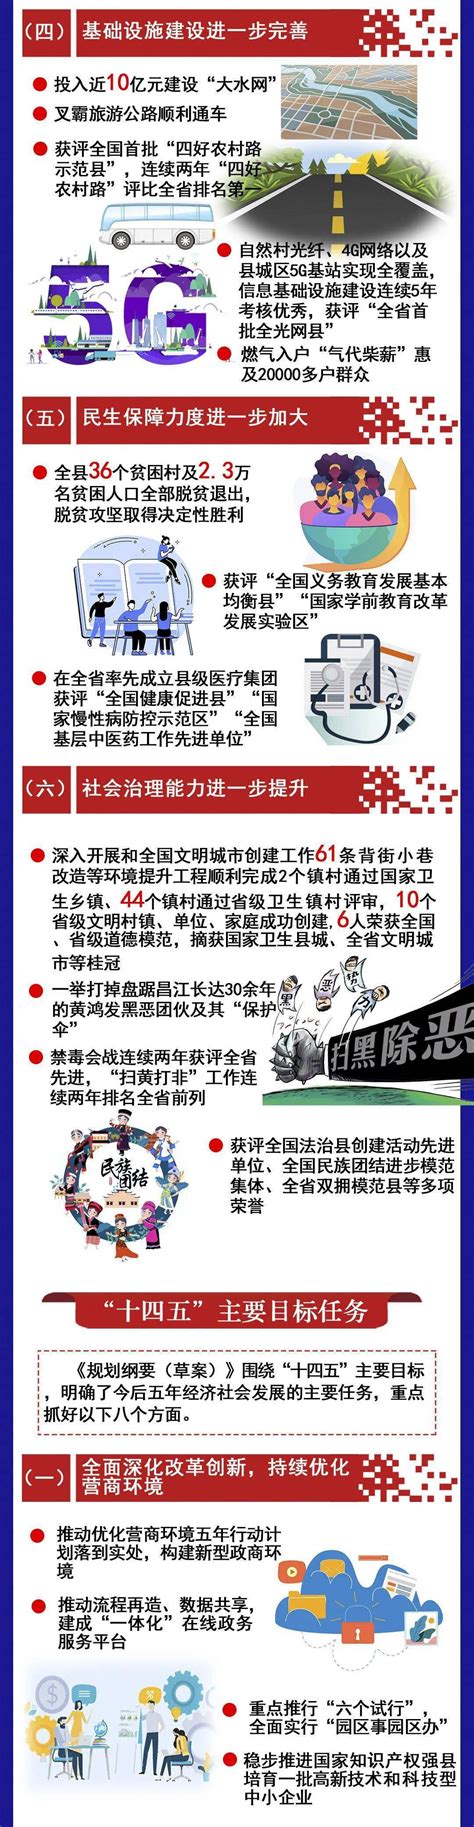 一图读懂|2021年昌江县政府工作报告-搜狐大视野-搜狐新闻